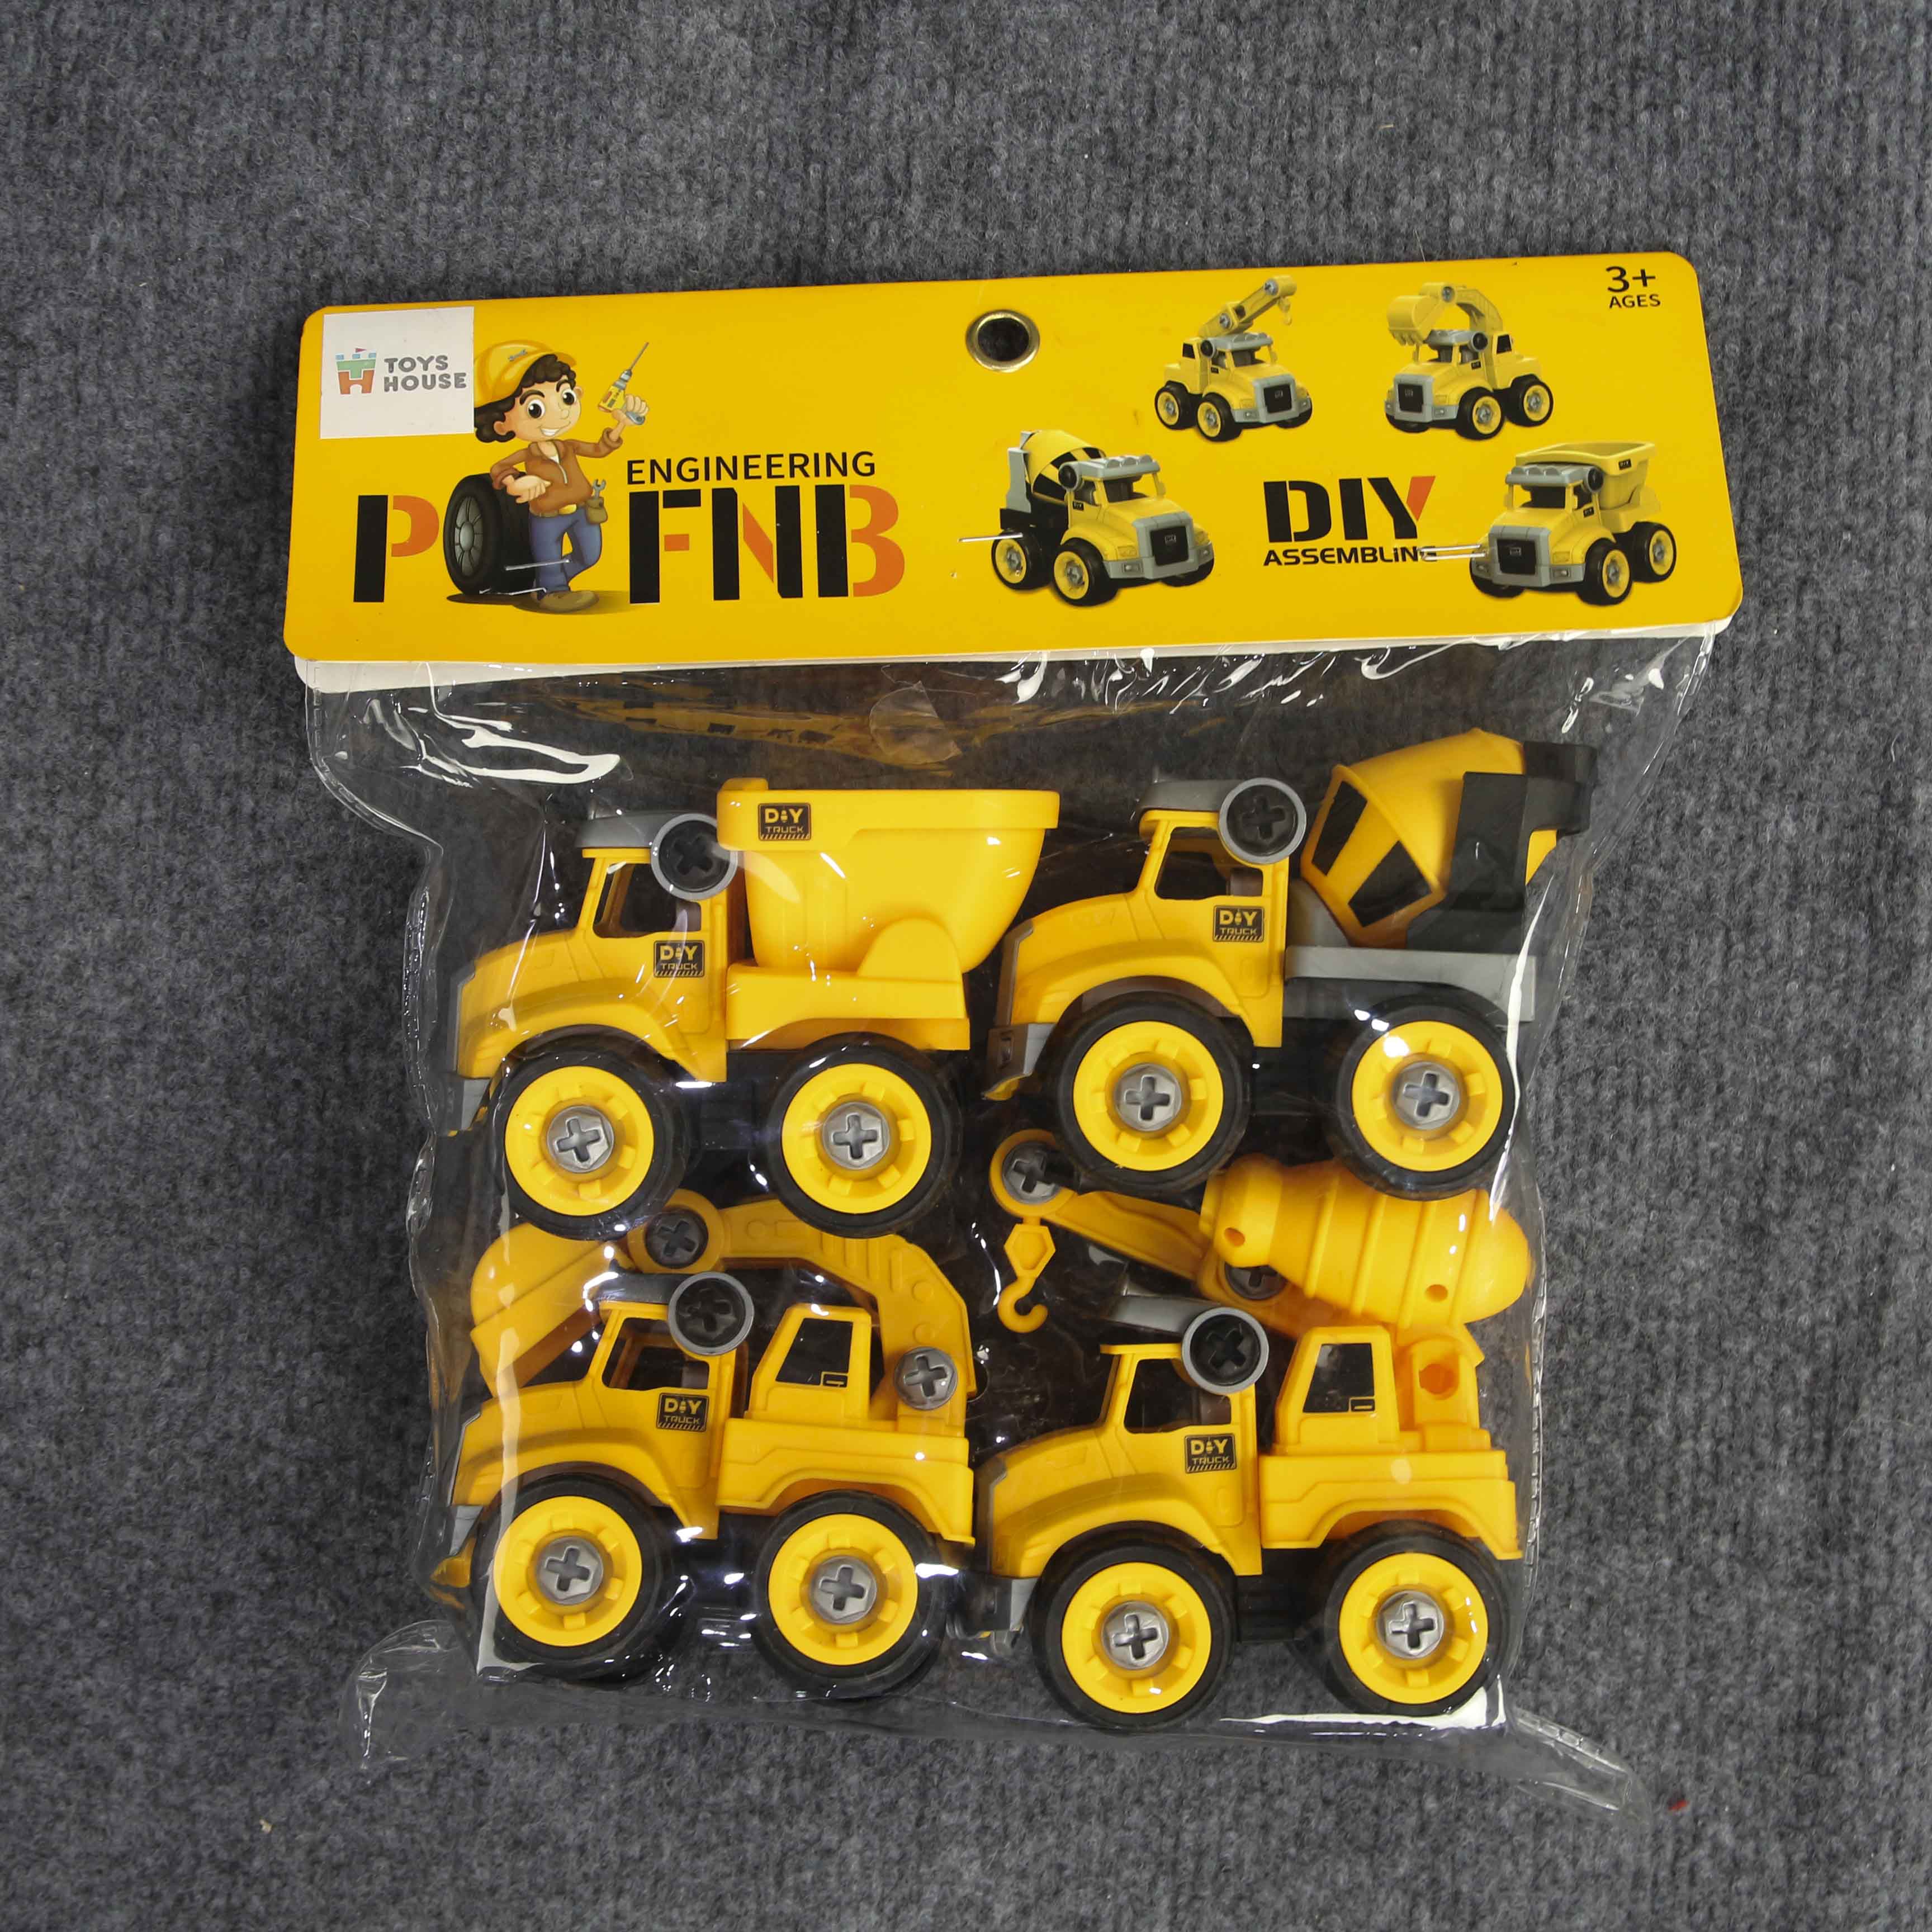 Đồ chơi lắp ghép mô hình oto xây dựng DIY, biến đổi từ cần cẩu sang máy xúc, xe bồn và xe ben Toys house 0620-TH4-129-15 - tặng đồ chơi tắm 2 món